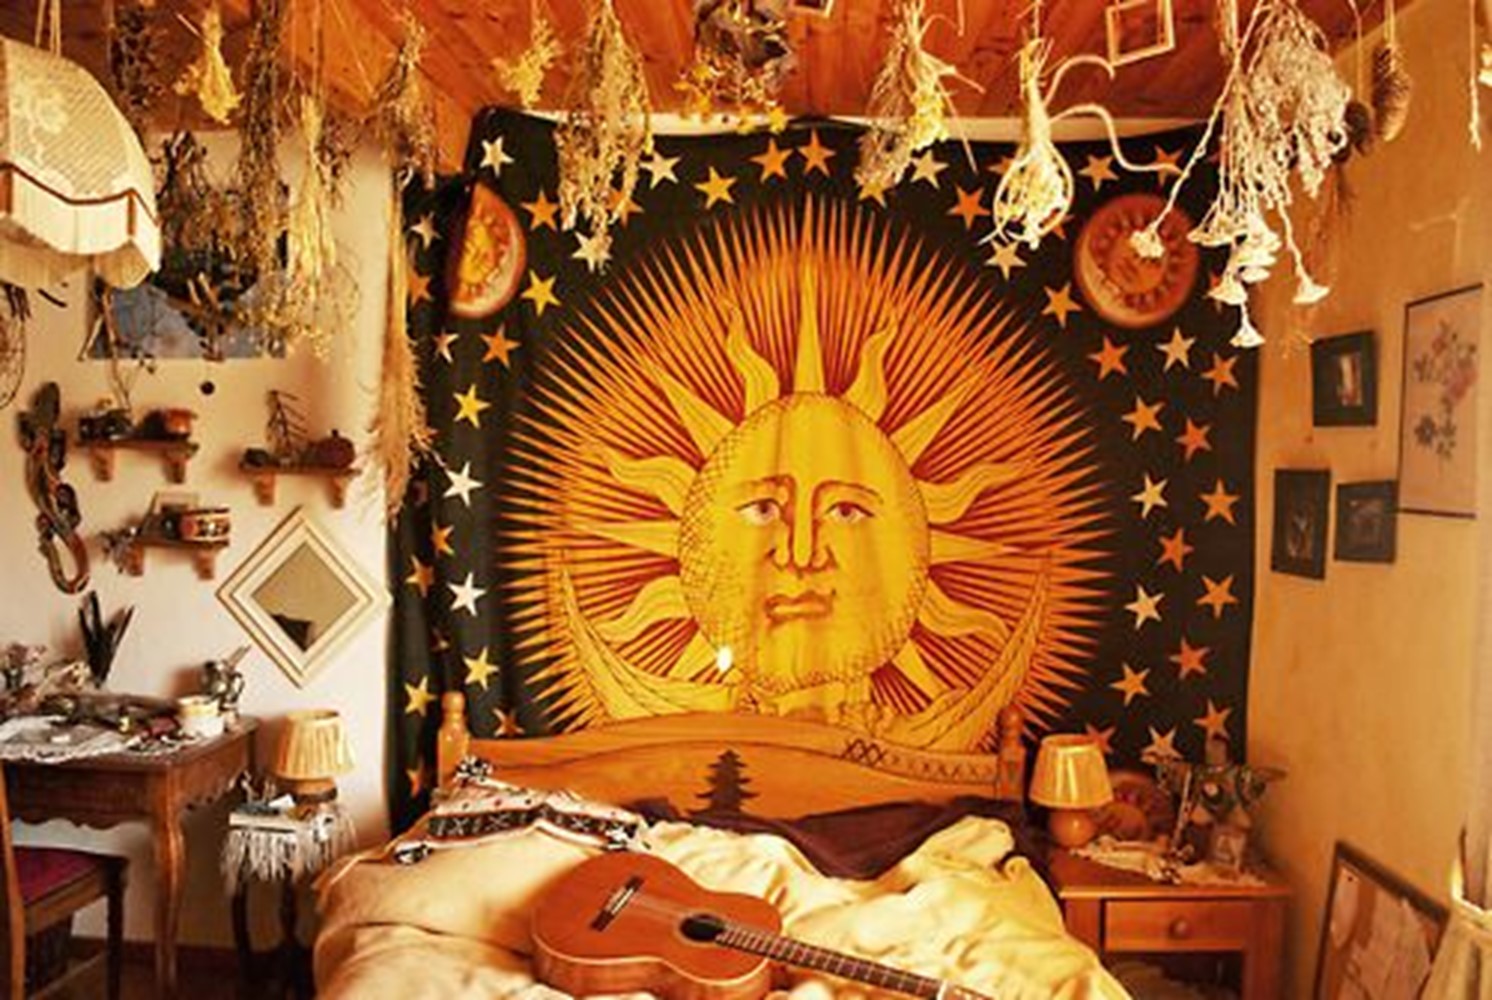 Hippie Bedroom